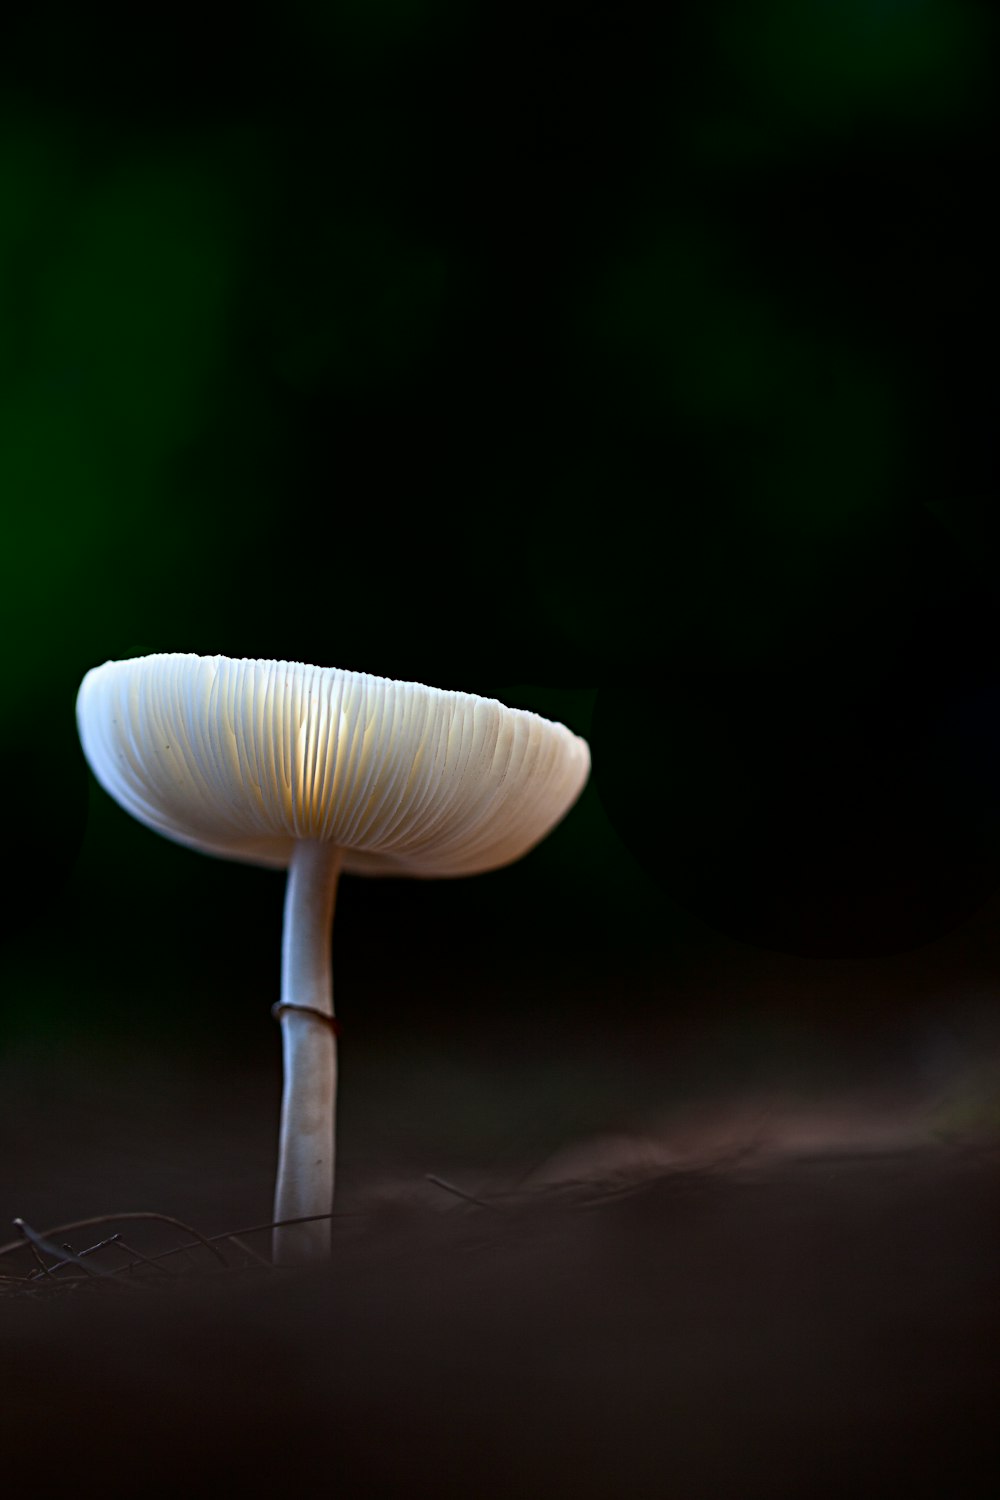 Vista do cogumelo branco minúsculo